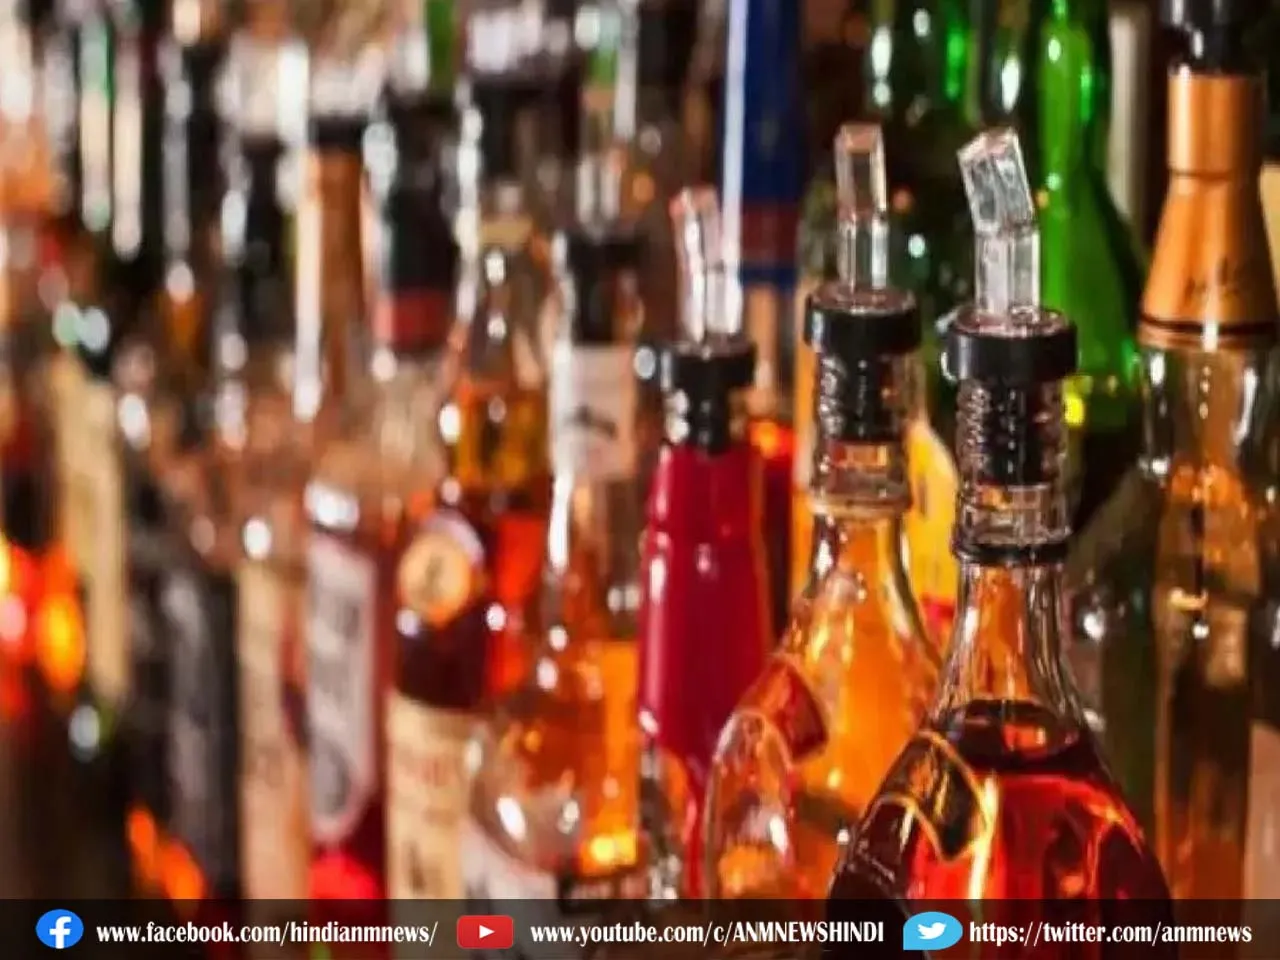 Delhi News: दिल्ली में छठ पूजा के दिन शराब की दुकानें रहेंगी बंद